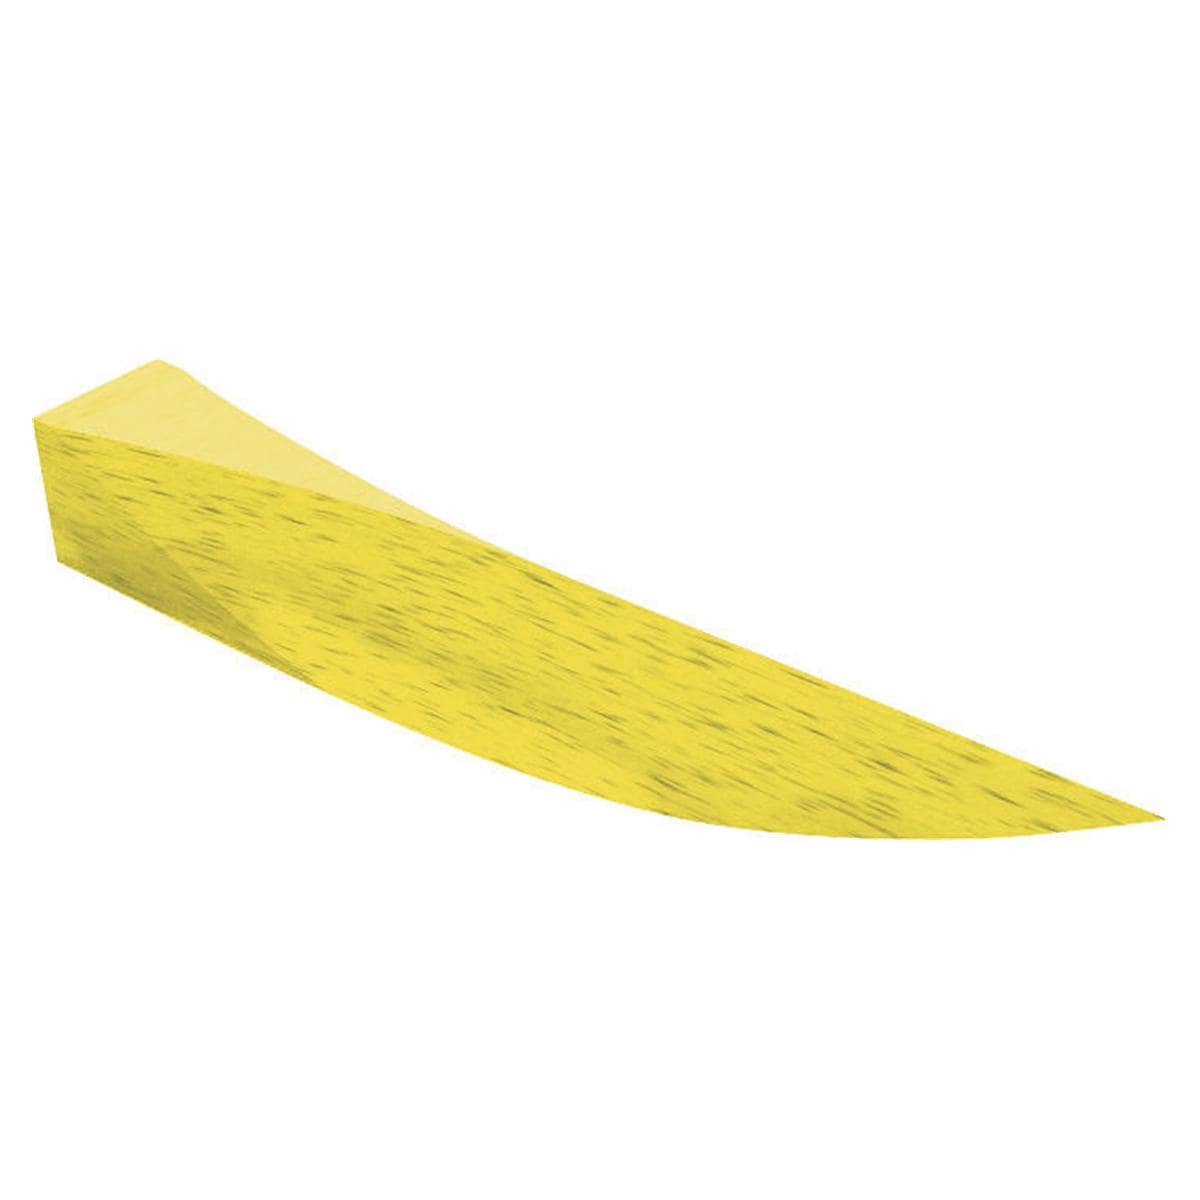 Interdentalkeile Ahorn, Beutel - Einzelgrößen - Gelb, 15 mm (L), Packung 100 Stück